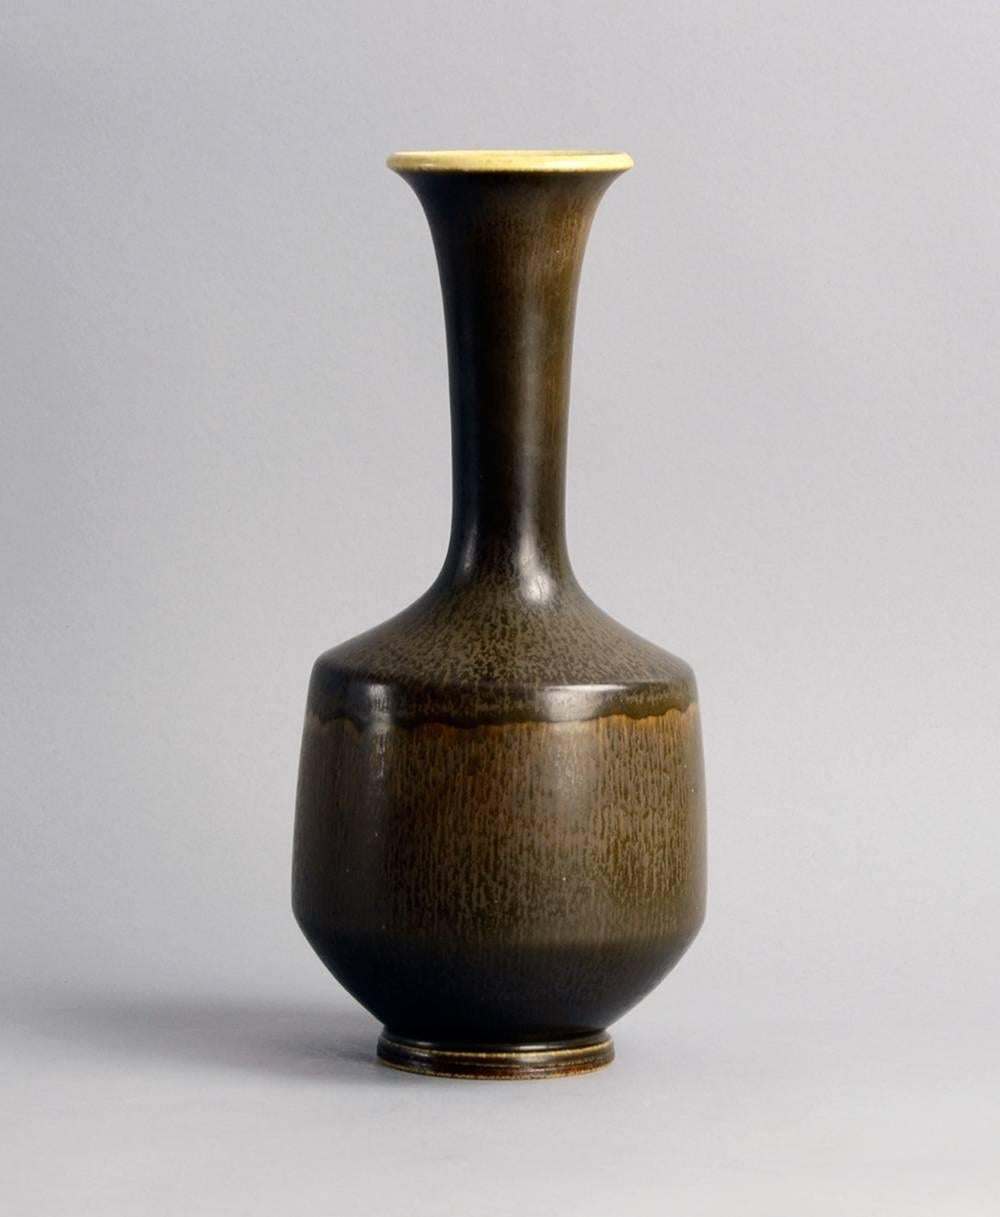 Scandinavian Modern Unique Vase with Brown Haresfur Glaze by Berndt Friberg for Gustavsberg, 1966 For Sale